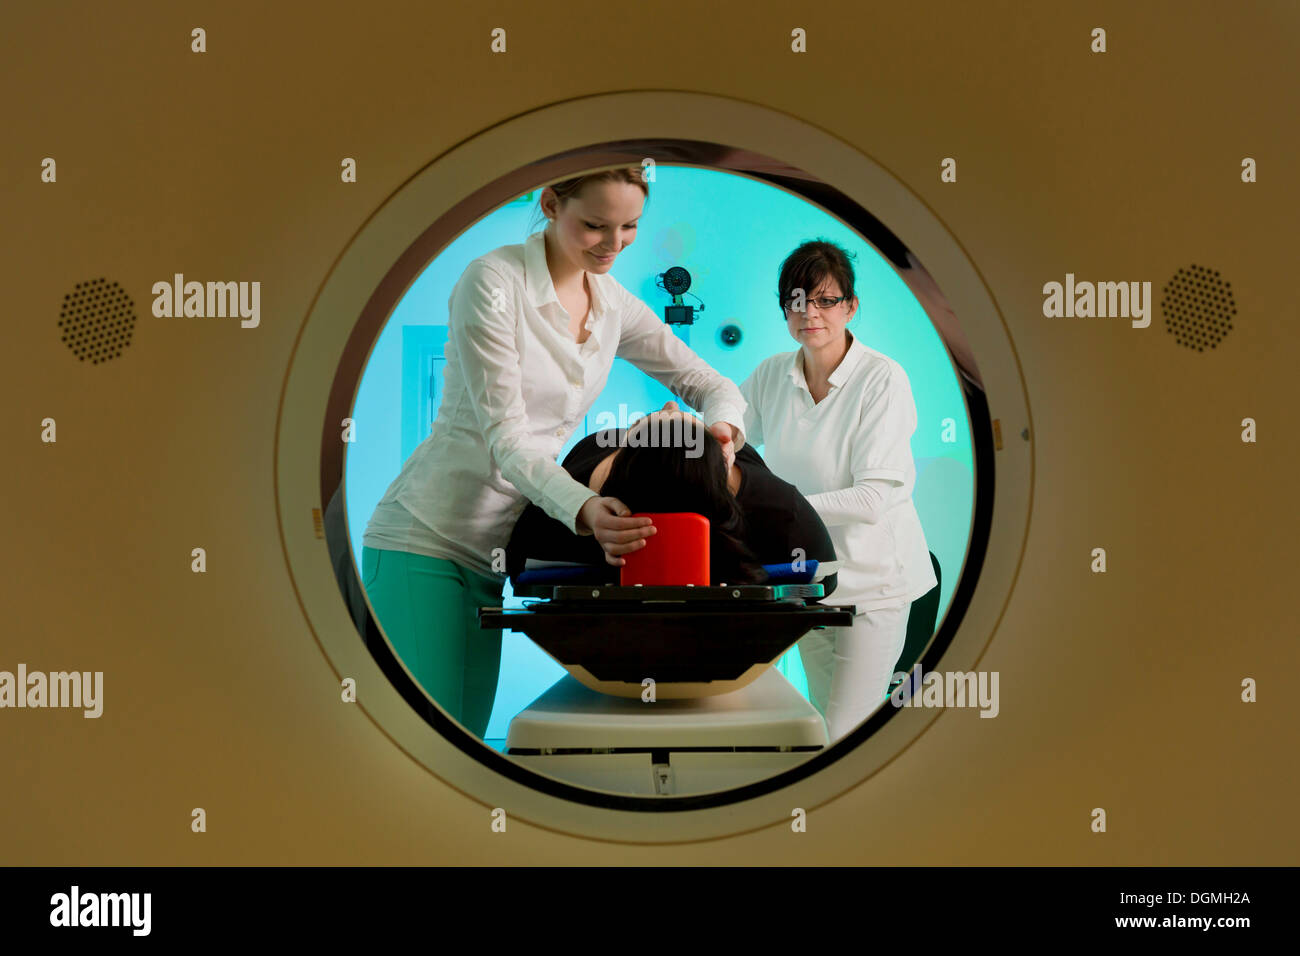 Le positionnement d'un patient dans une tomodensitométrie, scanner, Allemagne Banque D'Images